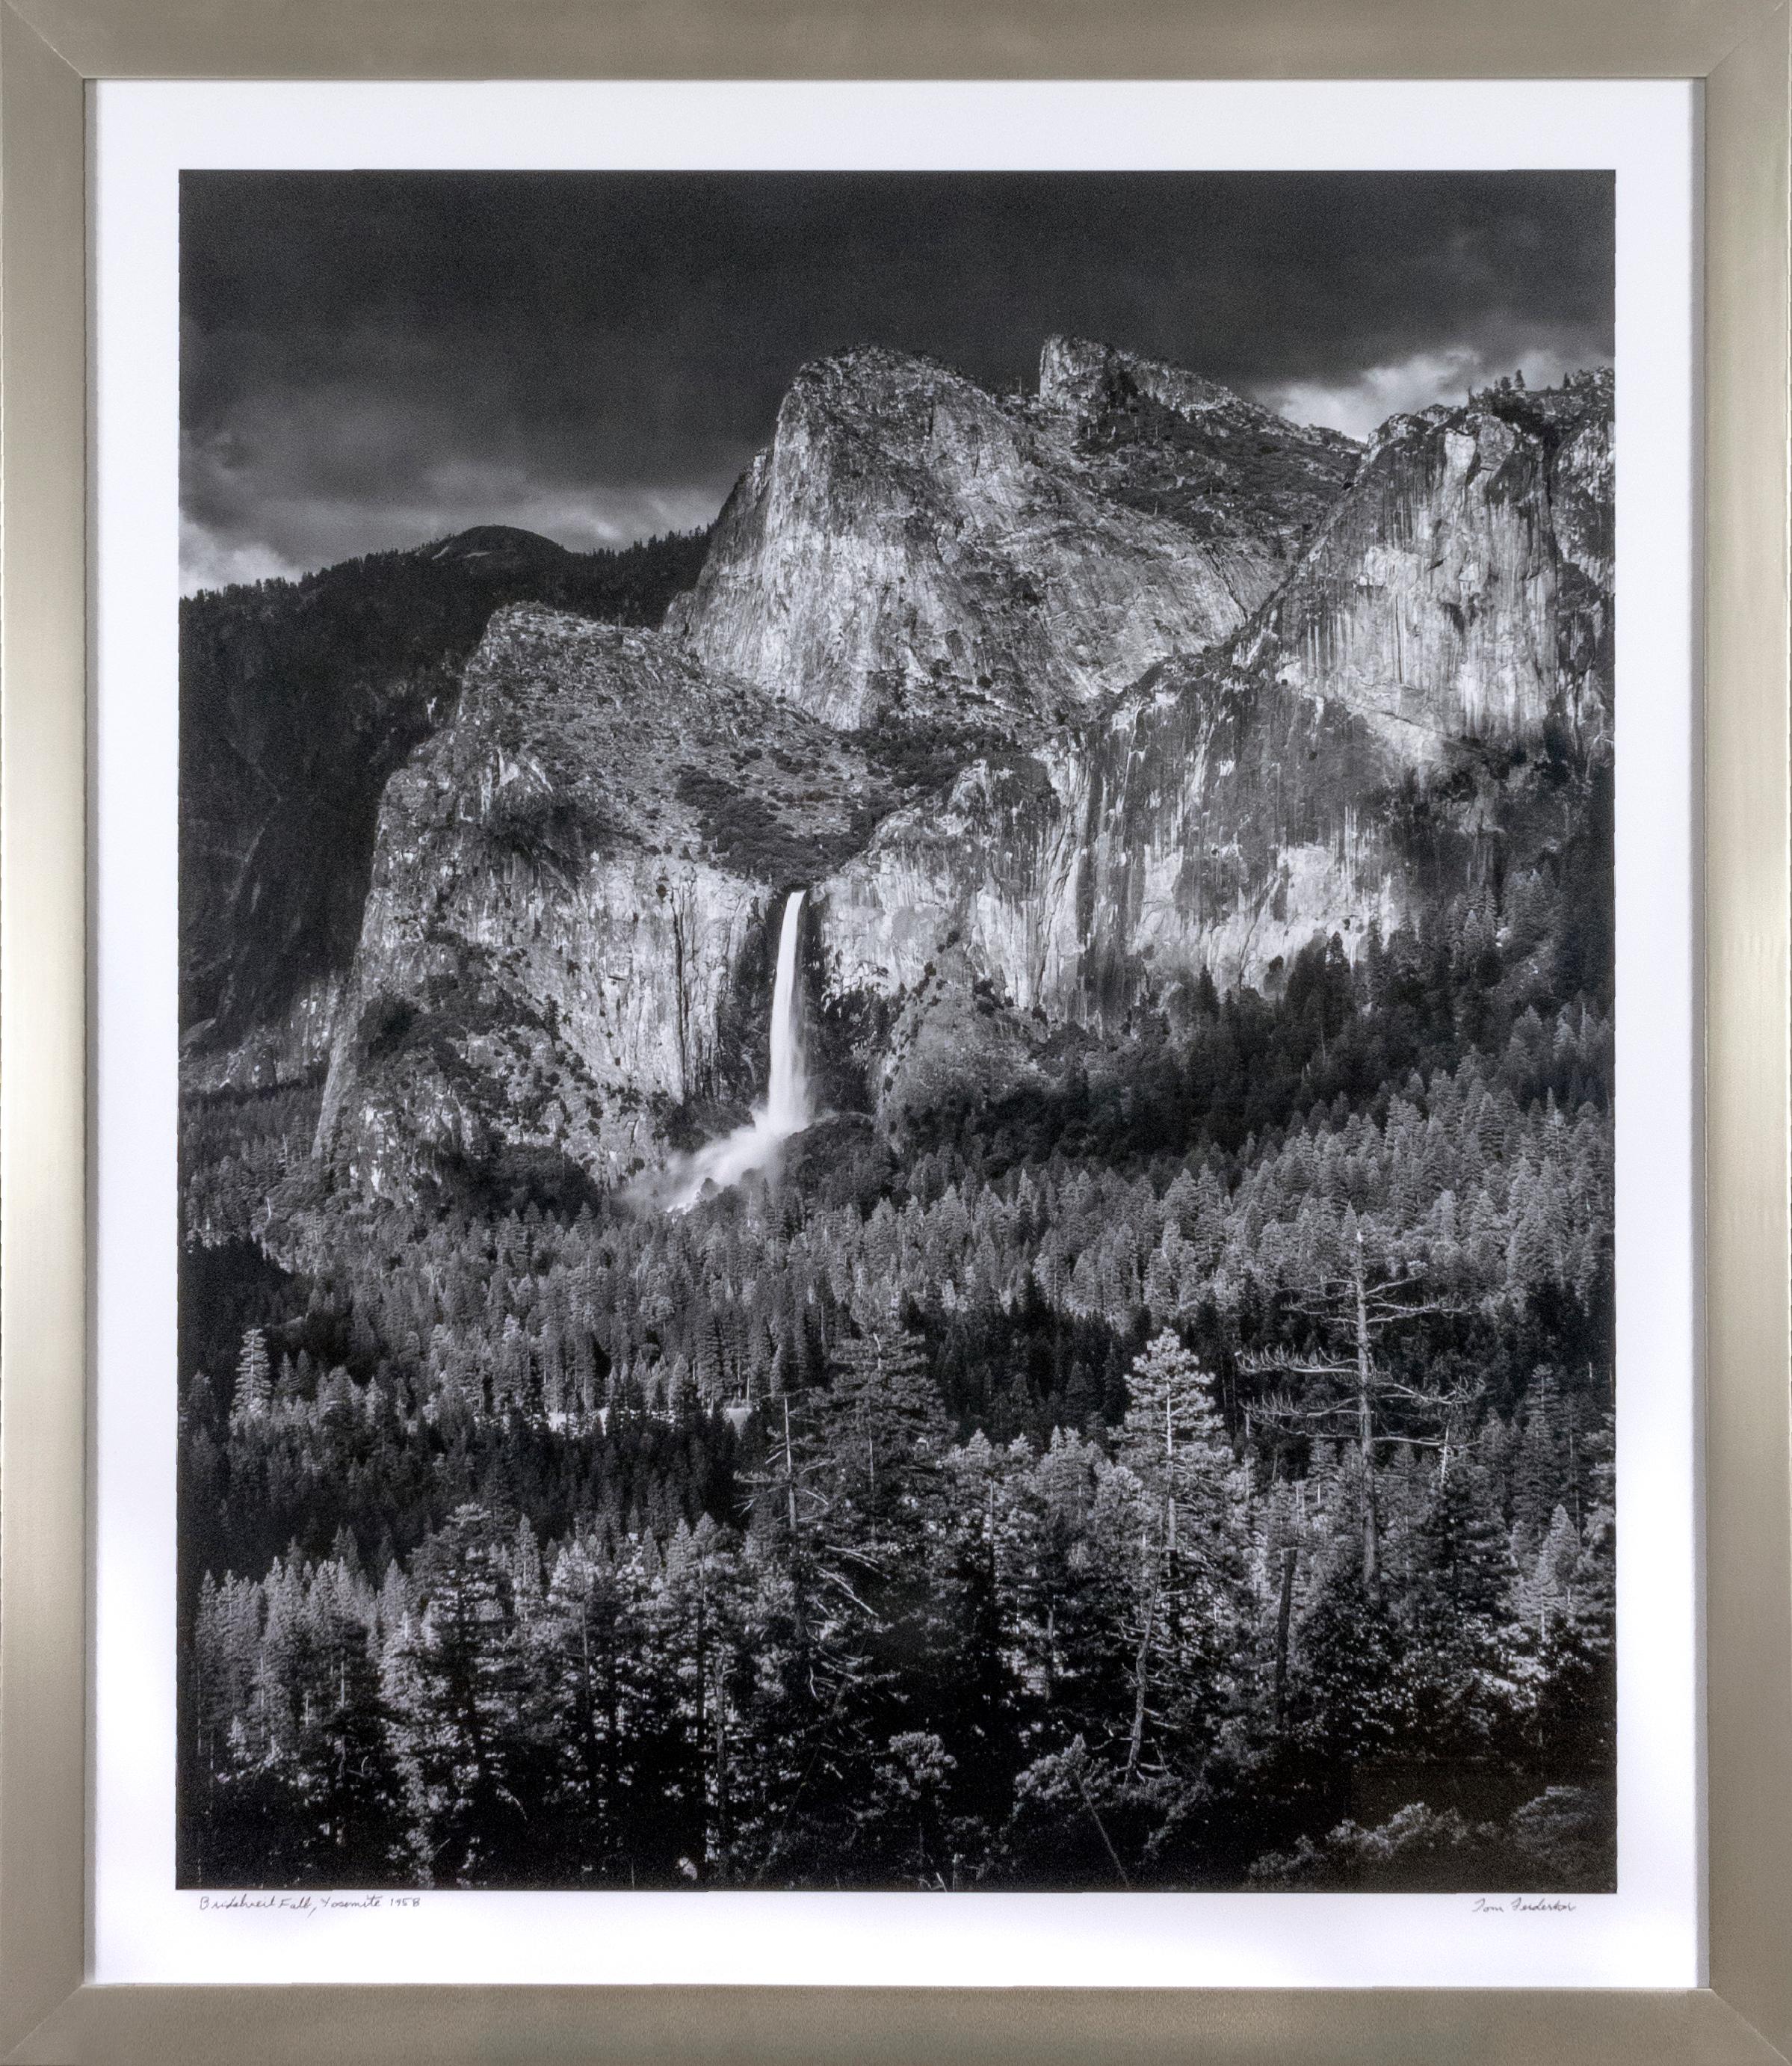 "Bridalveil Fall, Yosemite" ist ein Original-Schwarzweißfoto, das vom Künstler Thomas Ferderbar signiert ist. Es zeigt den Bridalveil Fall in Yosemite: ein schmaler Wasserfall vor einem Berg.

50" x 40" Kunst
58 1/4" x 48" Rahmen

Statement des